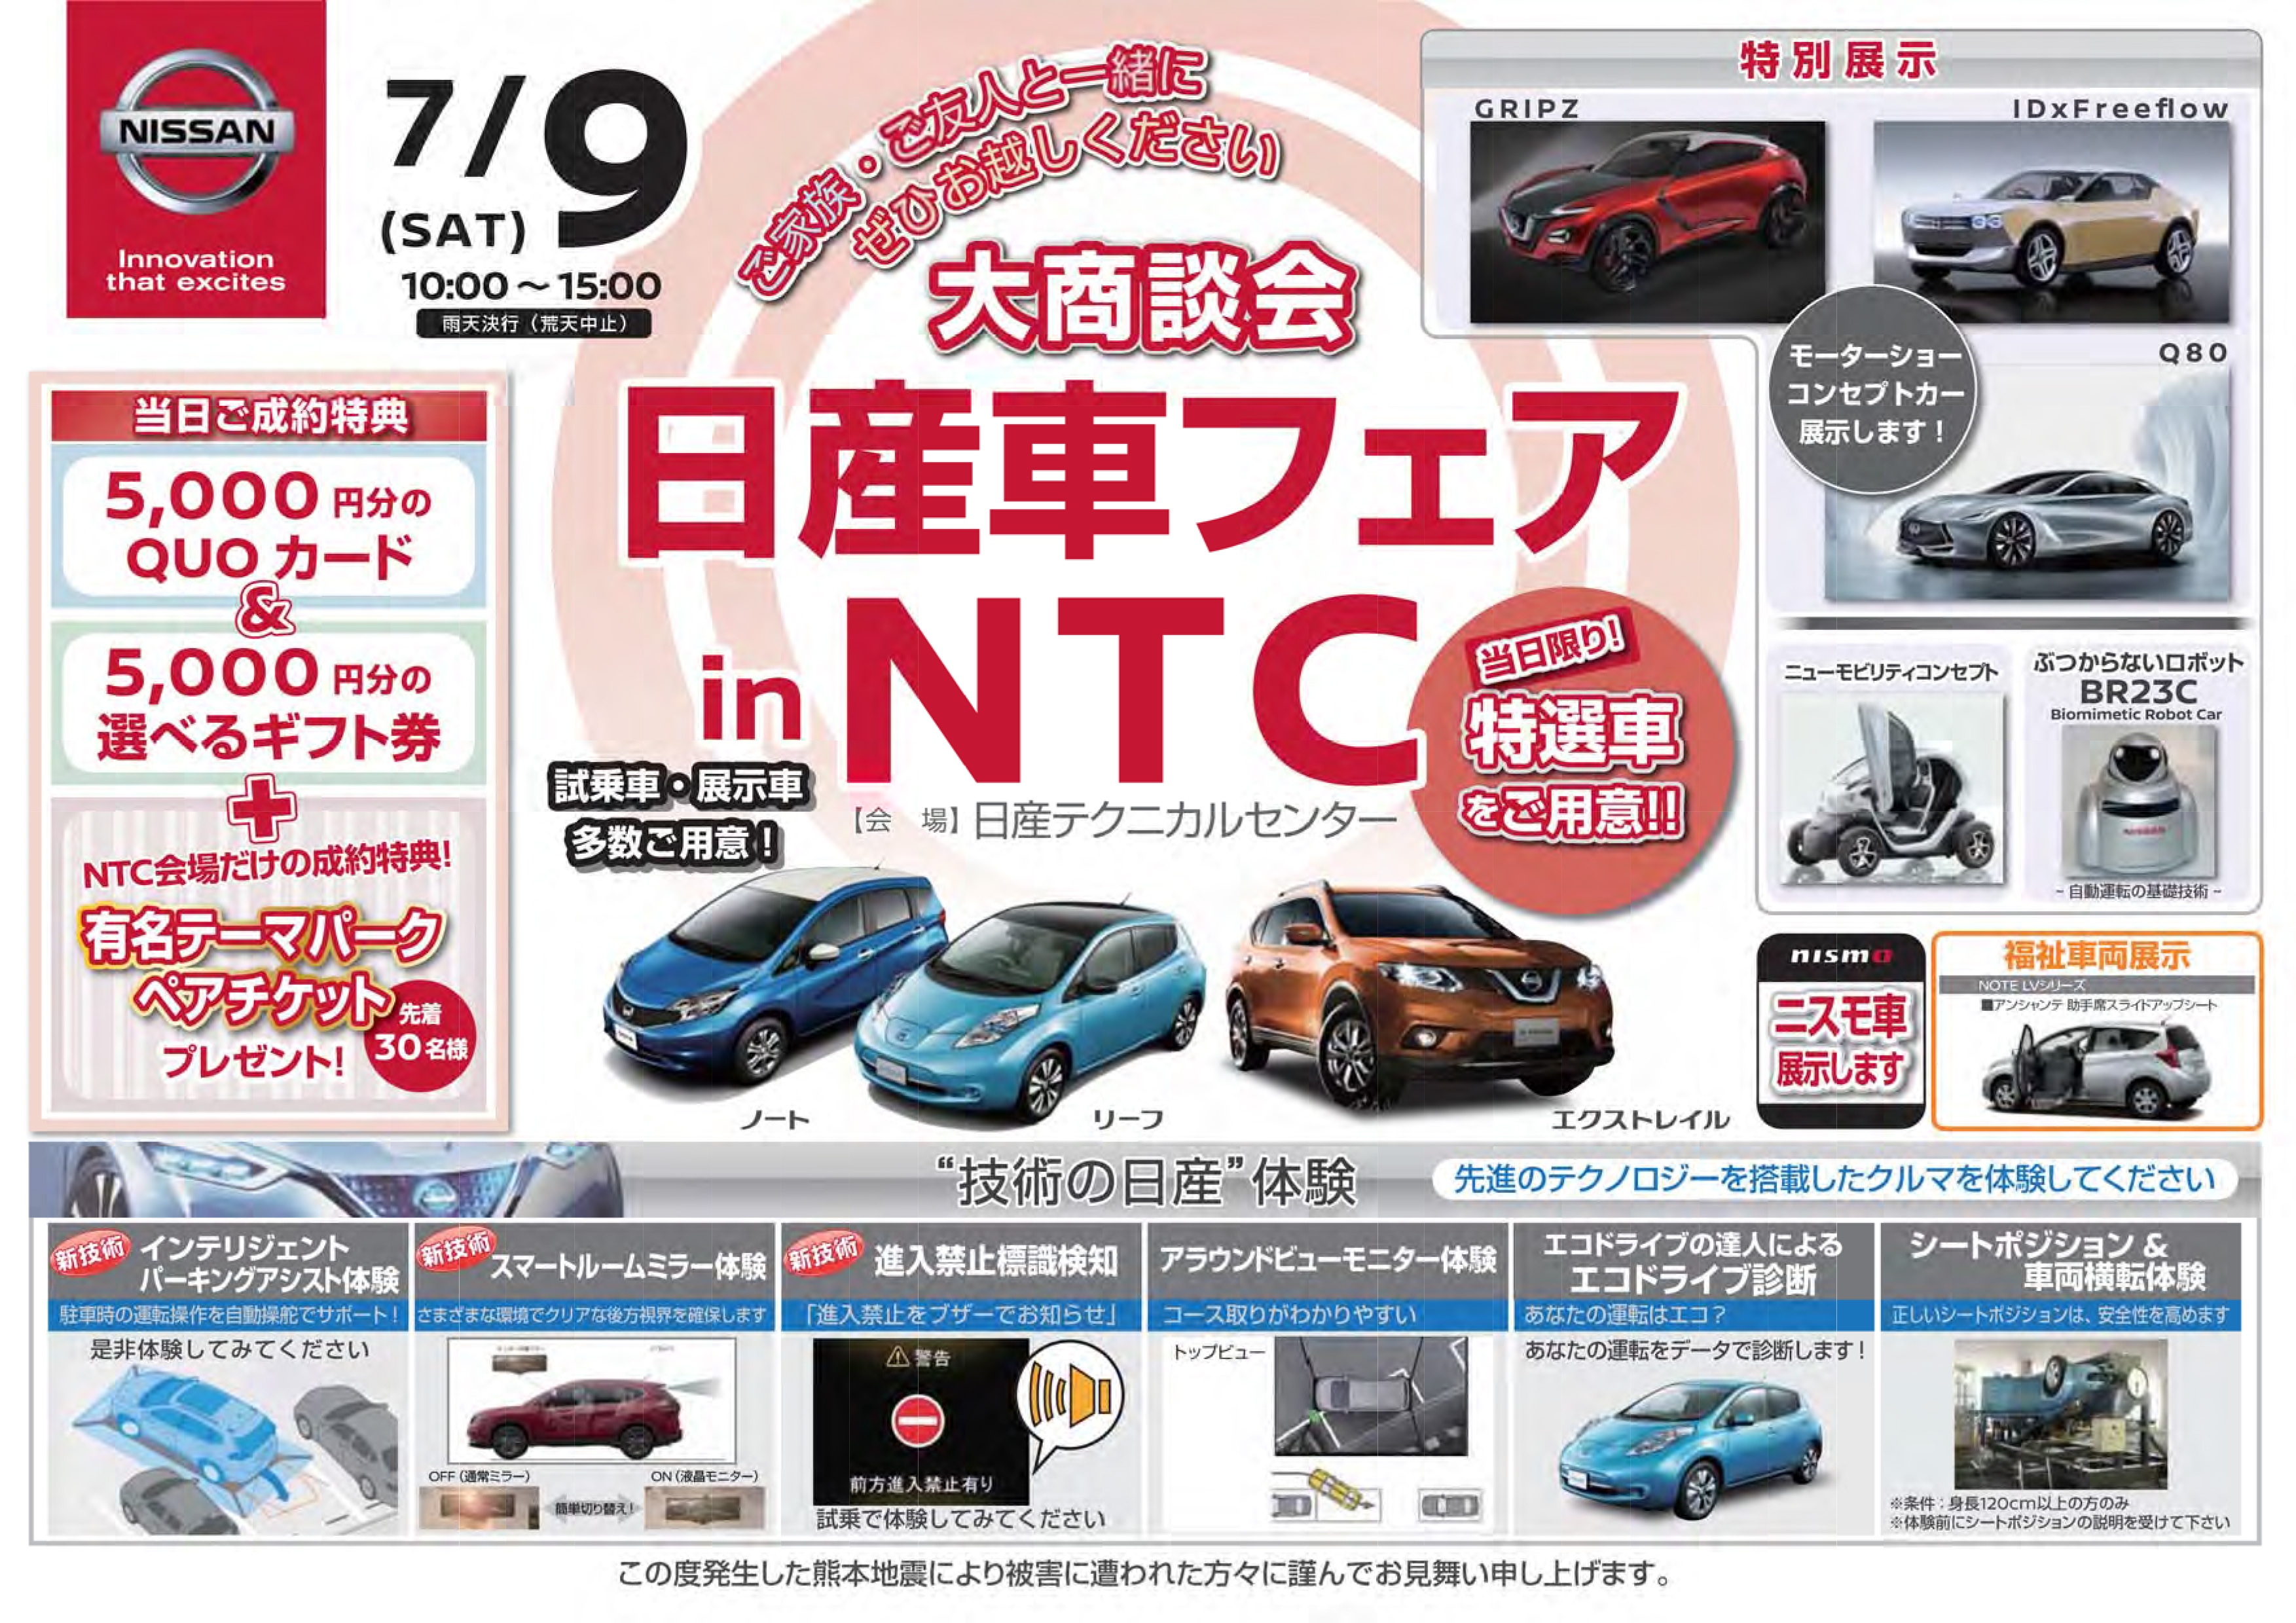 関東地域 イベント情報 7月9日 土 日産テクニカルセンター Ntc にて 日産車フェア In Ntc を開催 Newscast